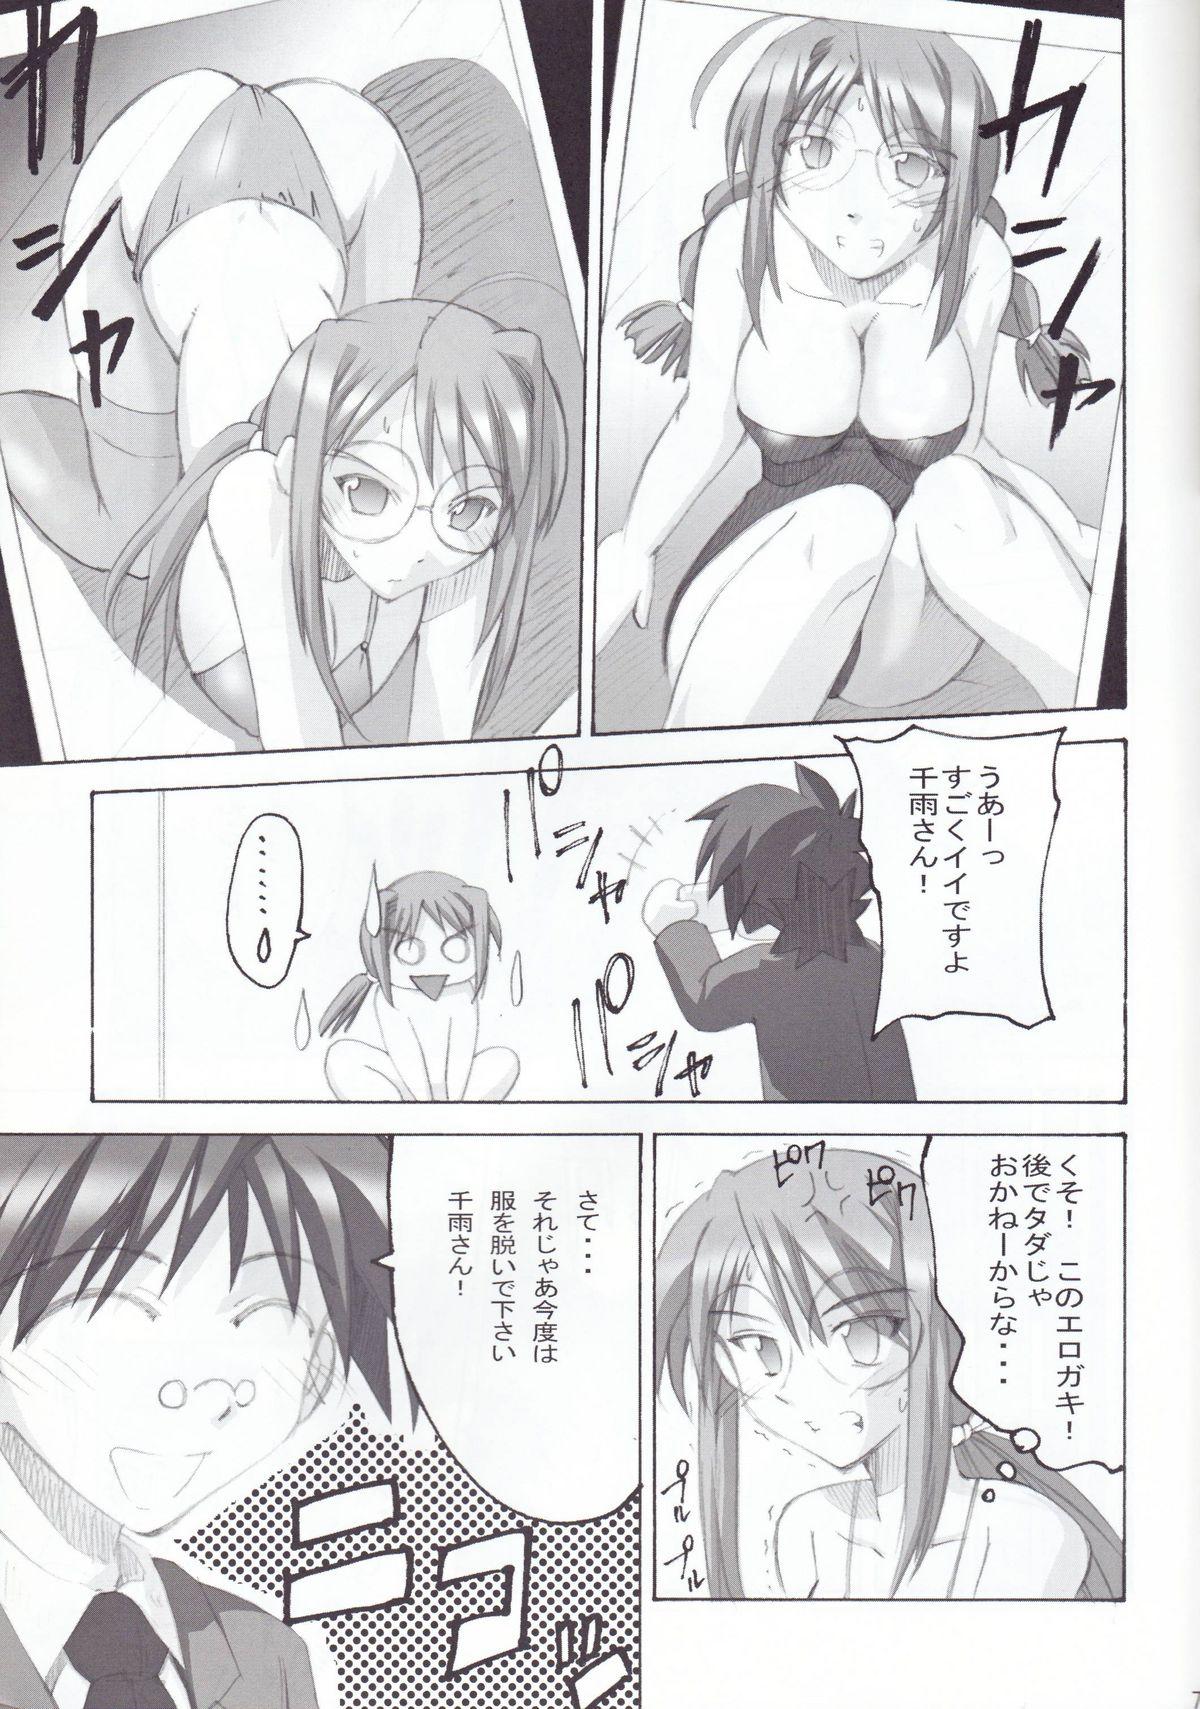 Perfect Body Negimagi! vol. 1 - Mahou sensei negima Bare - Page 6